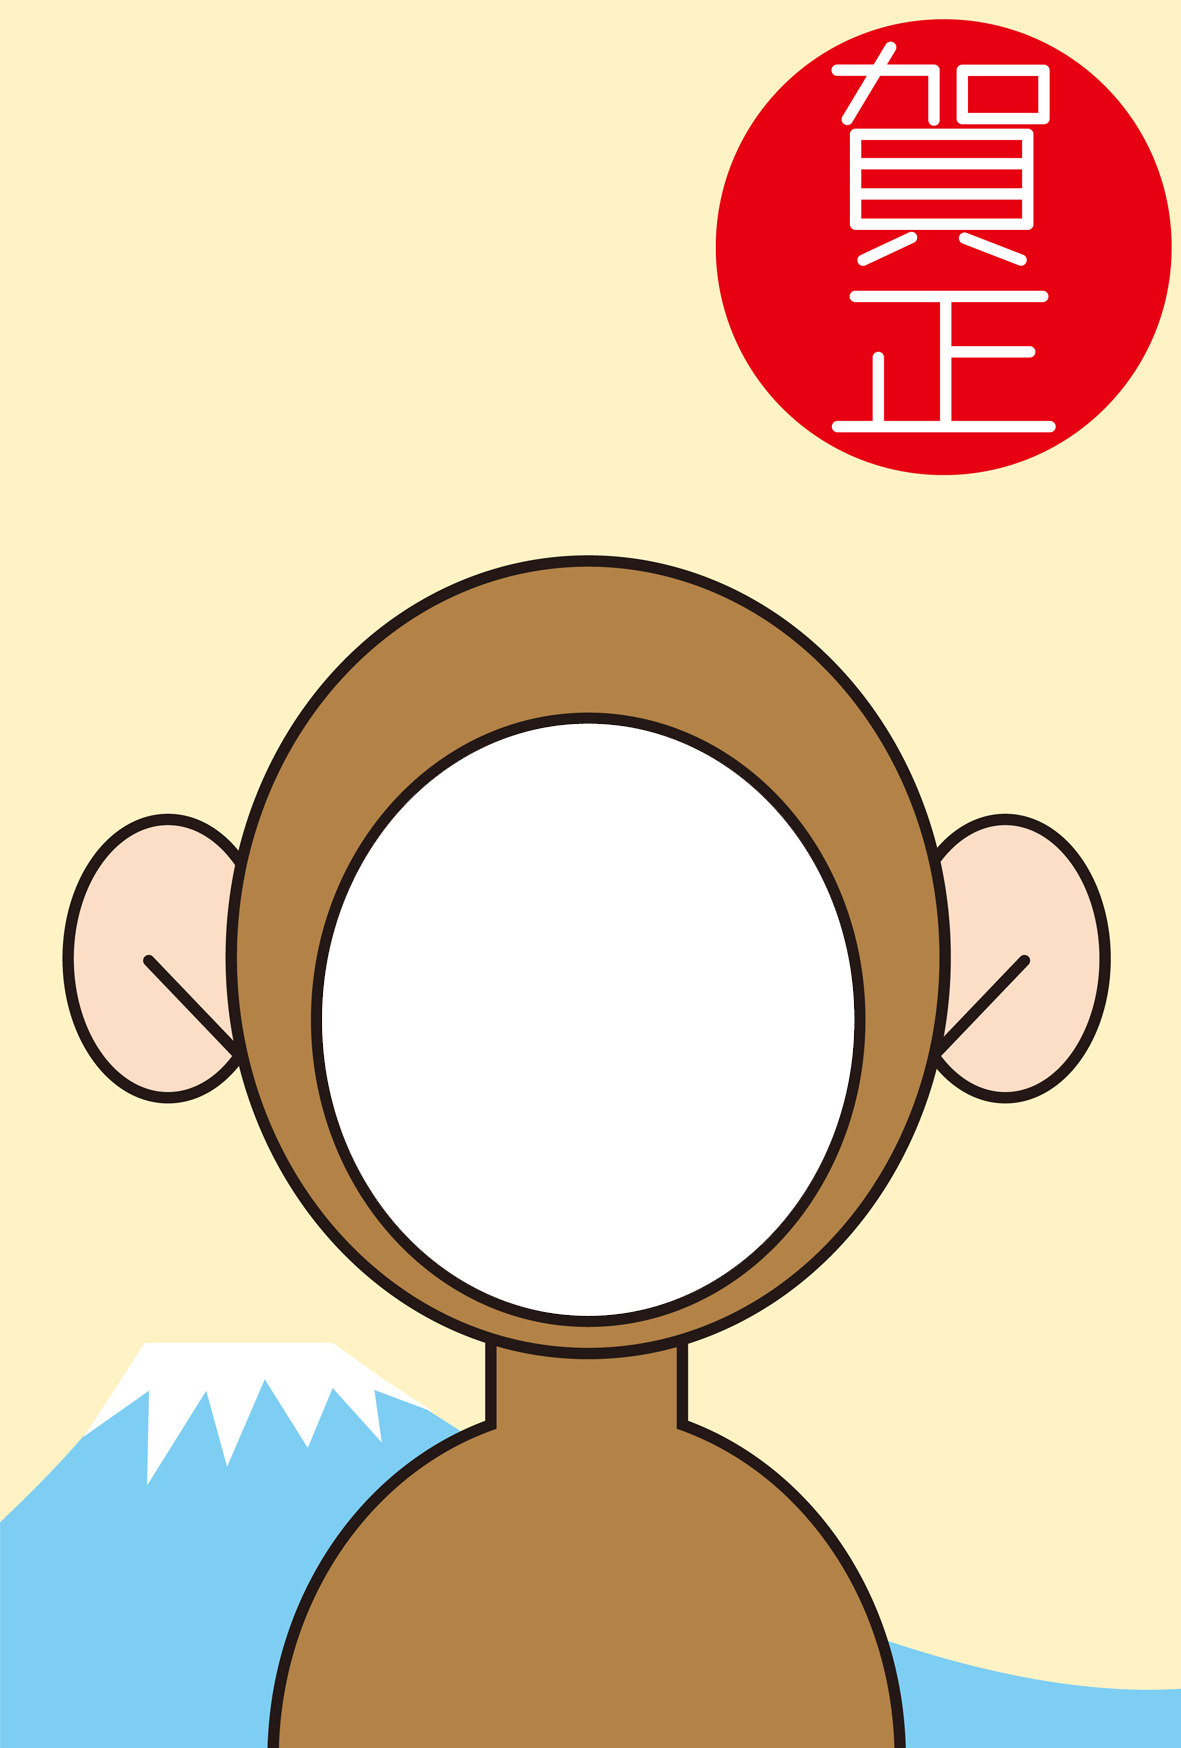 猿のかぶりものフレーム仕様 申年2016年年賀状テンプレート 無料イラスト配布サイトマンガトップ